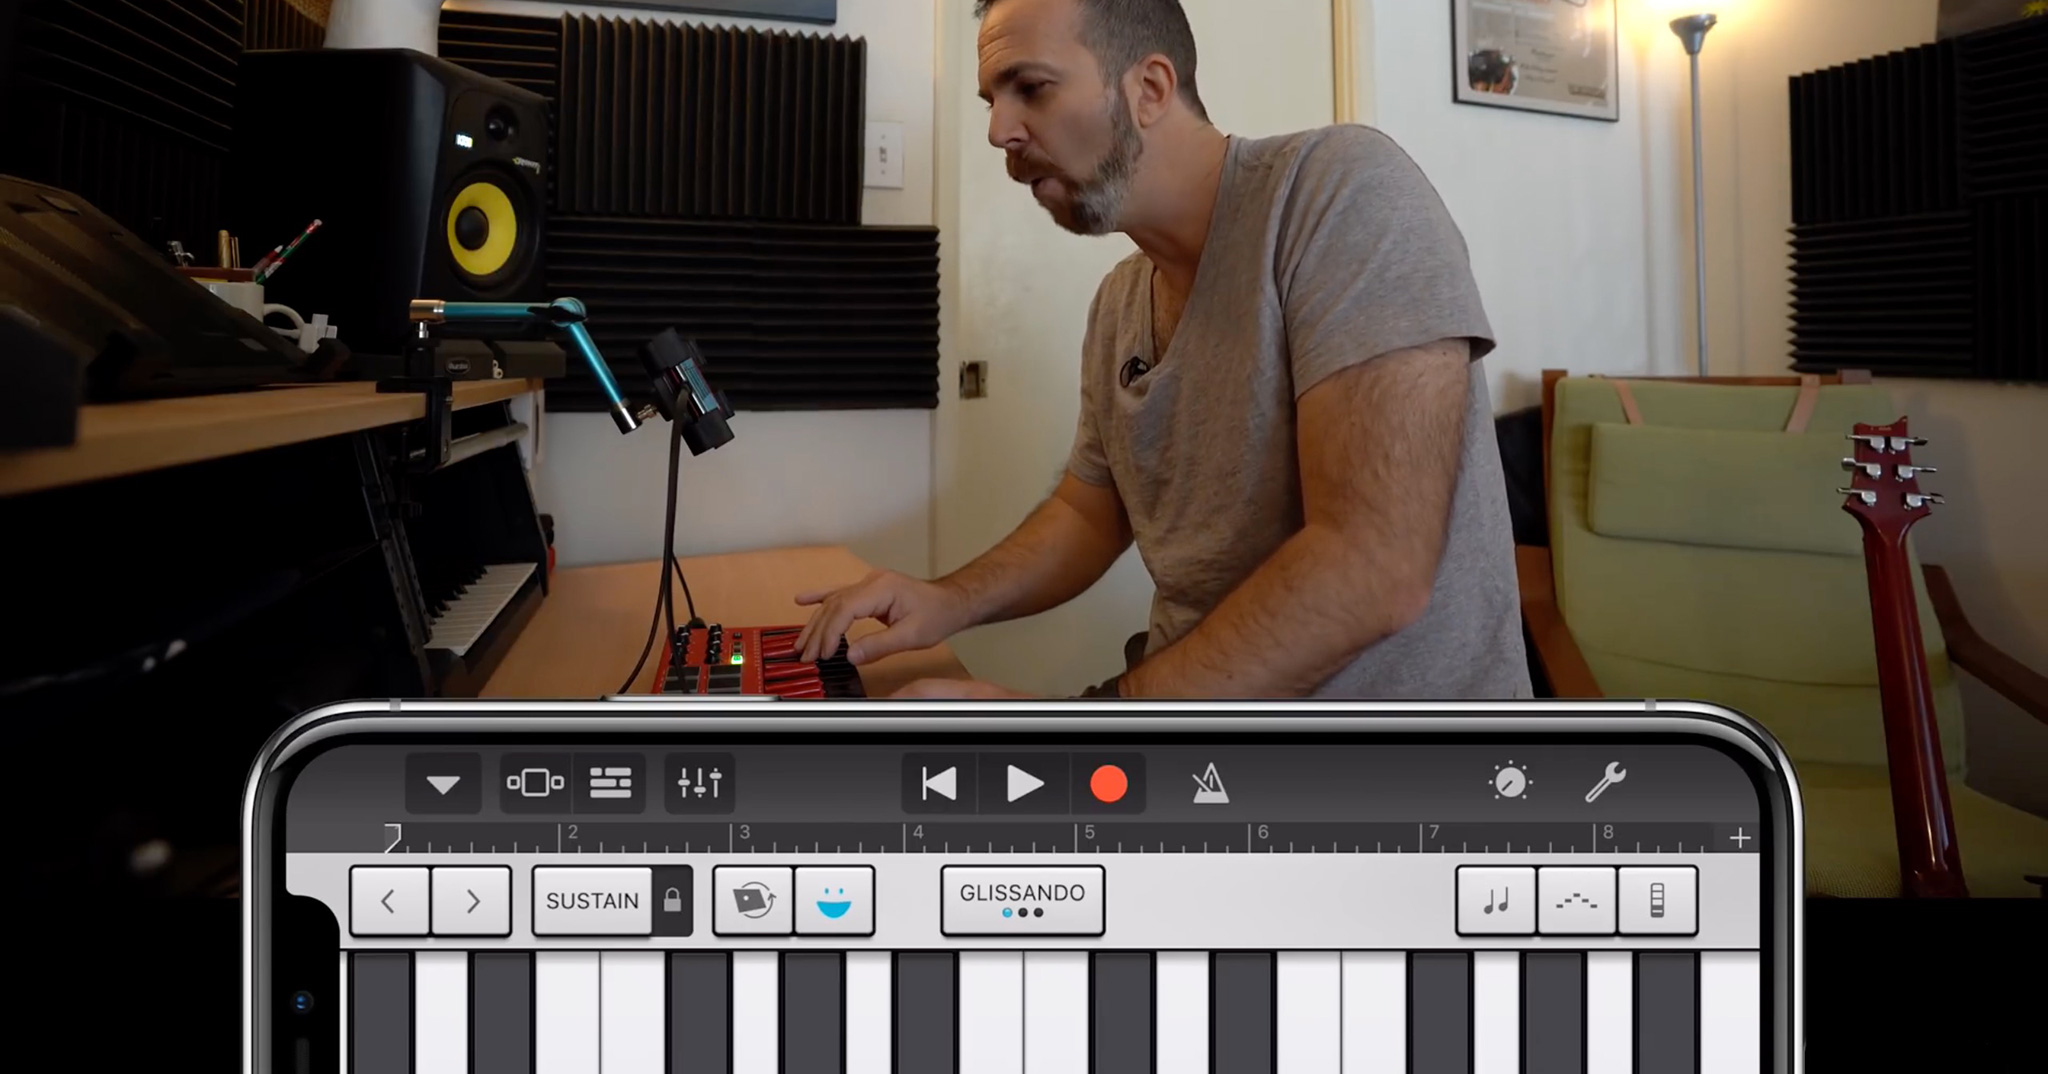 Camera TrueDepth trên iPhone X hỗ trợ nghệ sĩ chơi nhạc với khuôn mặt